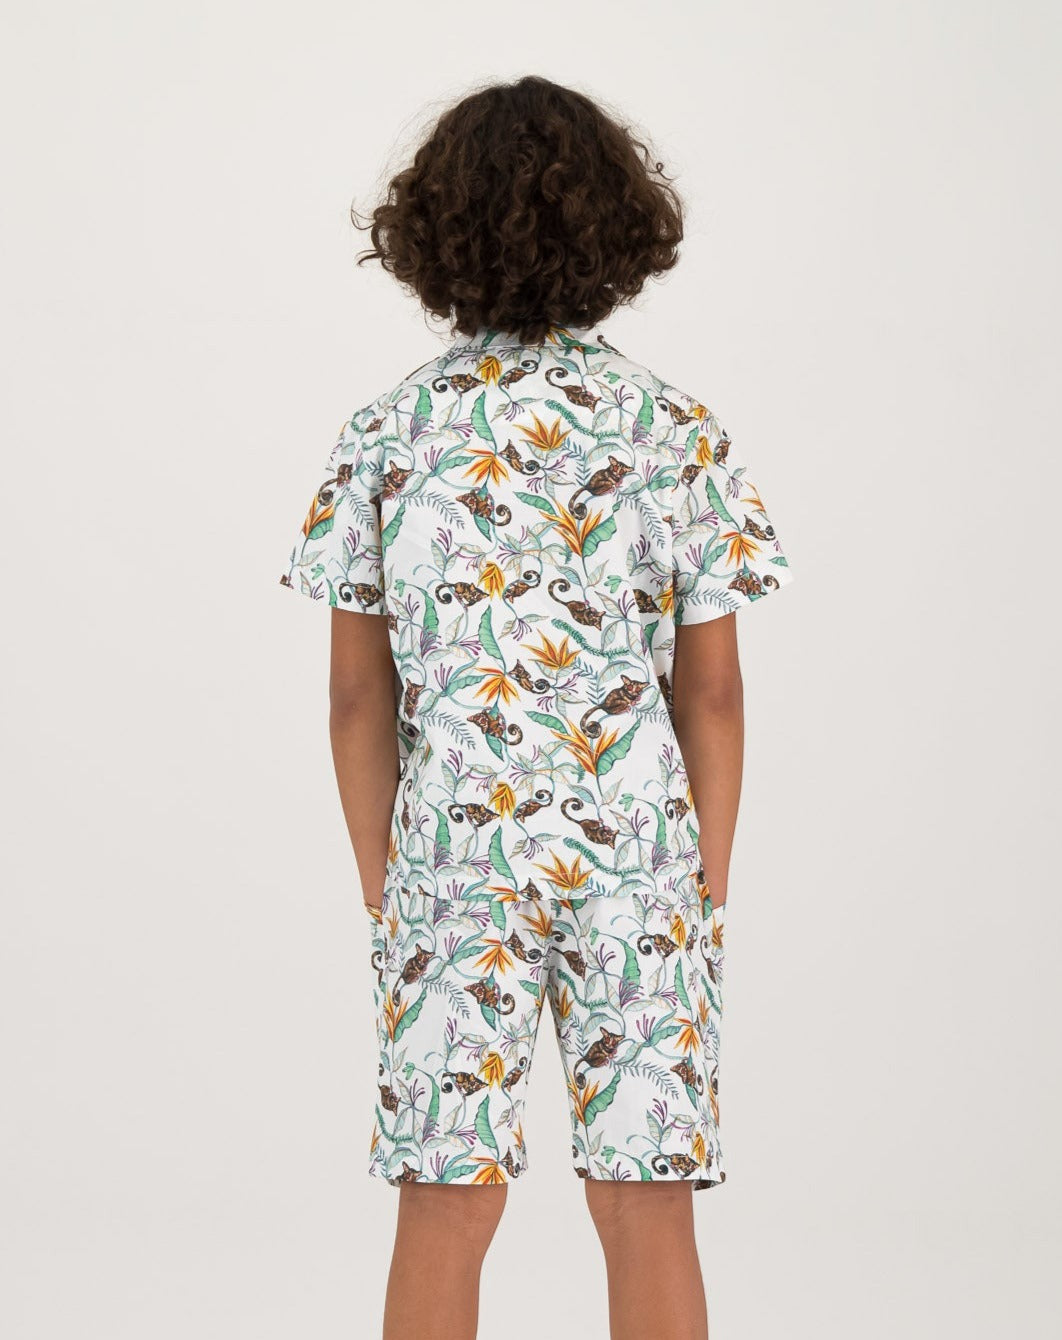 Boys Short Pyjamas Nag Apies White Back - Woodstock Laundry